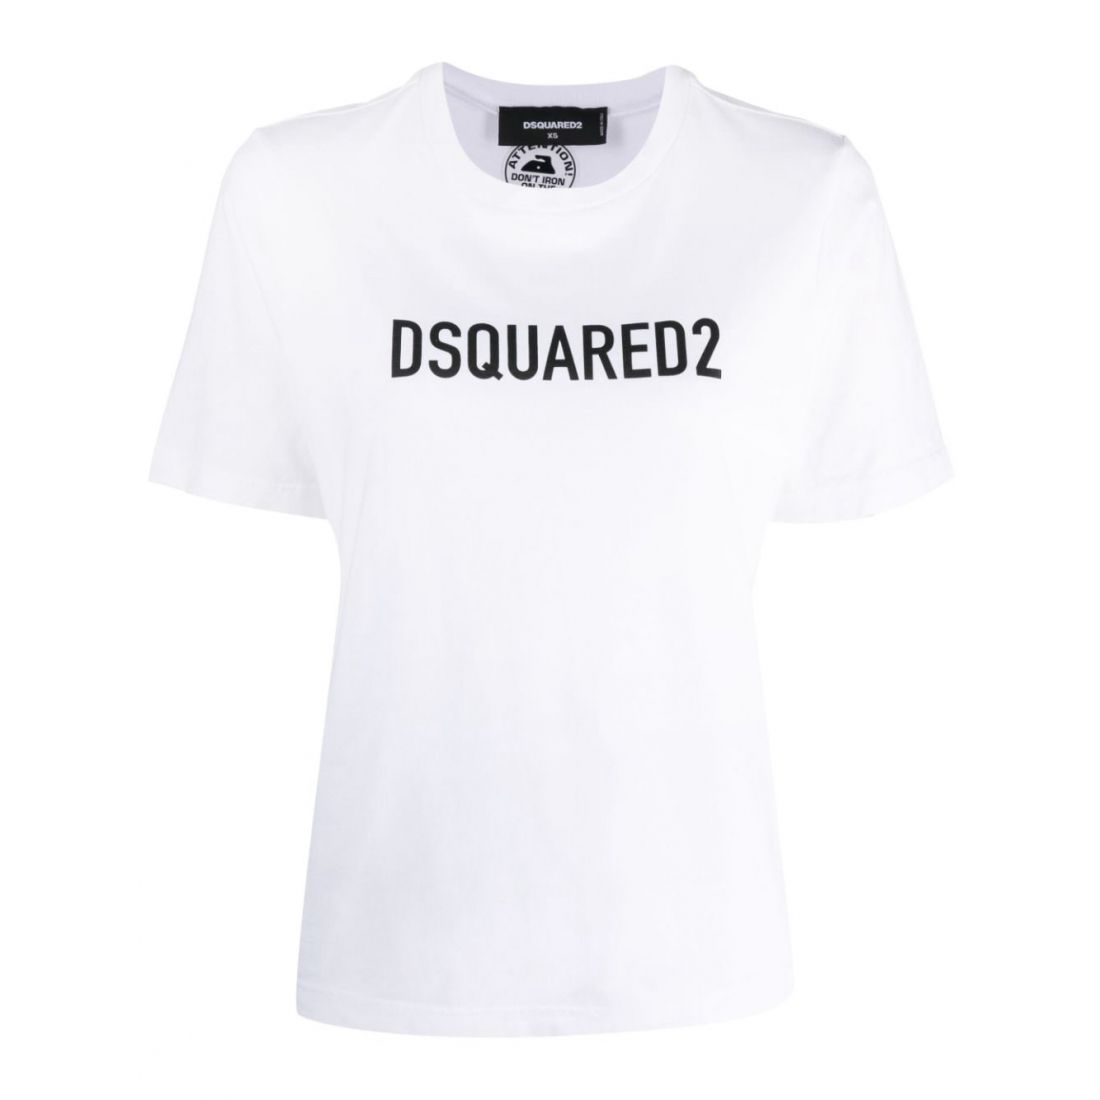 Dsquared2 - T-shirt 'Logo' pour Femmes